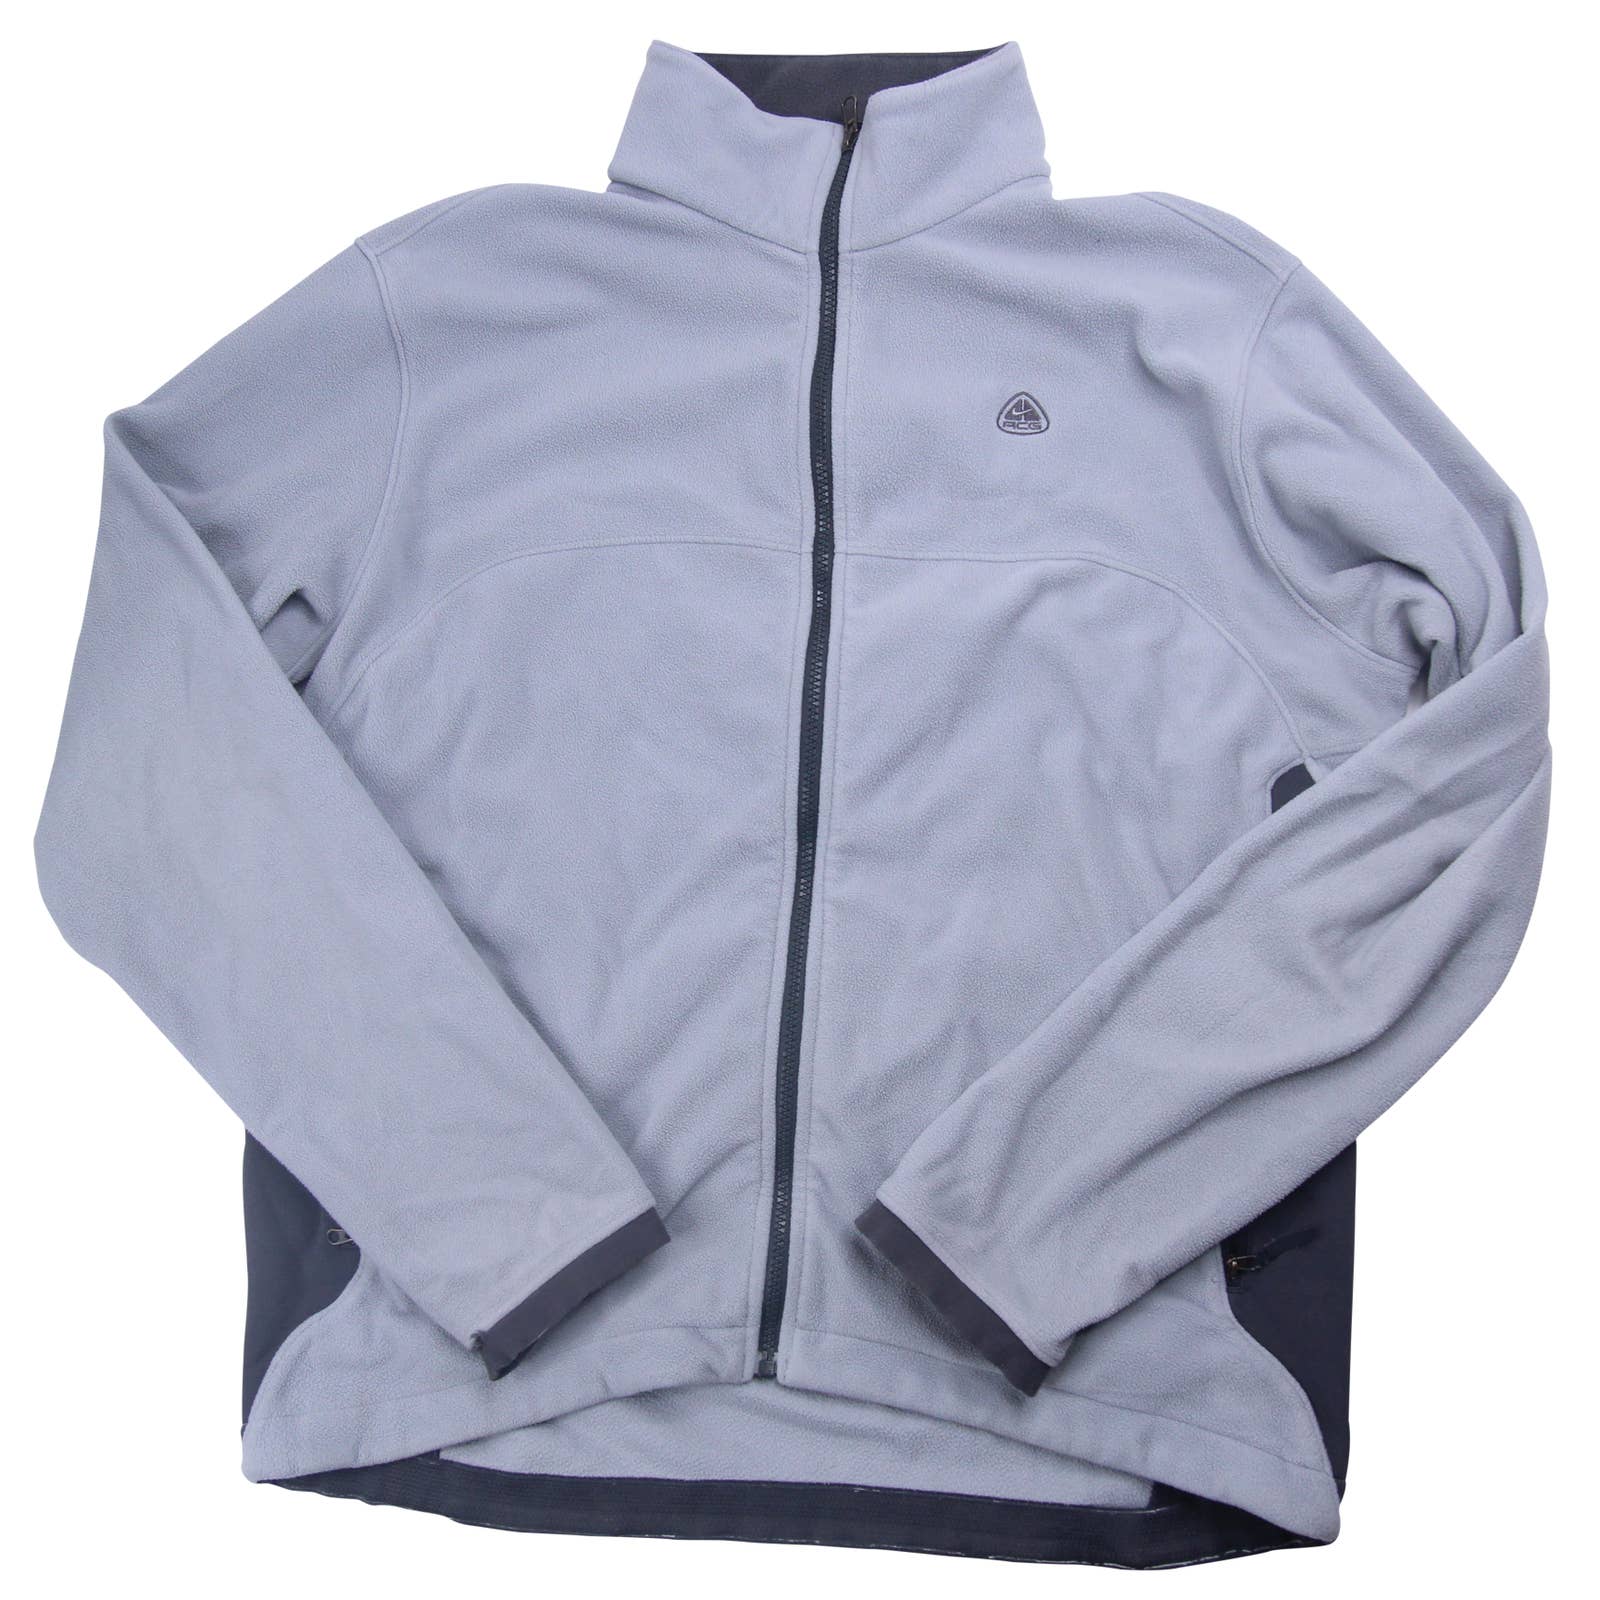 Vintage Nike ACG Fleece Jacket - XL